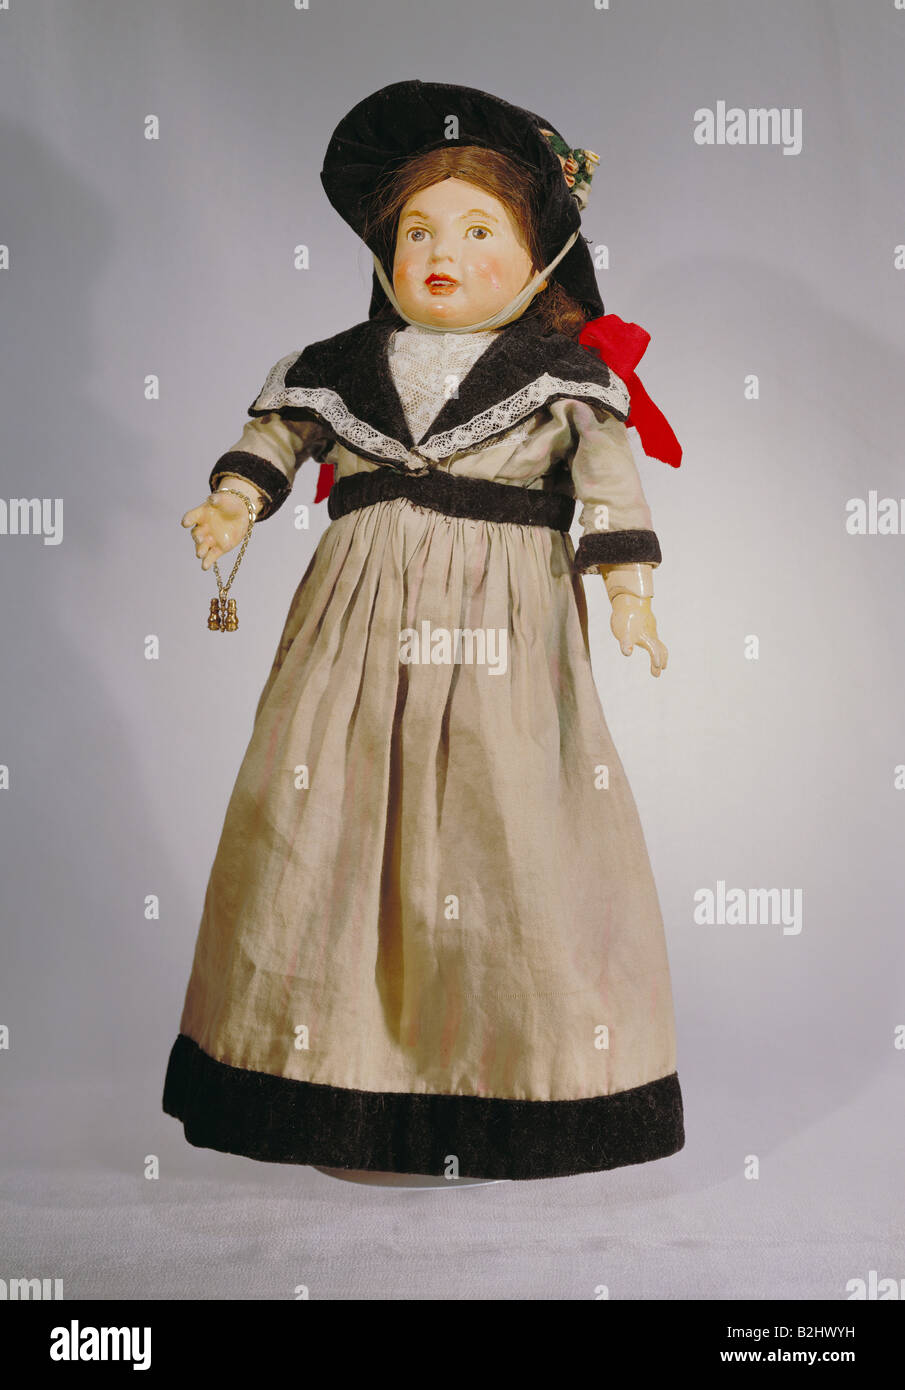 Giocattoli, bambole, 'Reformpuppe' (bambola Di Riforma), di Marion Kaulitz, altezza 46 cm, Monaco, Germania, circa 1908, Museo delle bambole di Monaco, Foto Stock